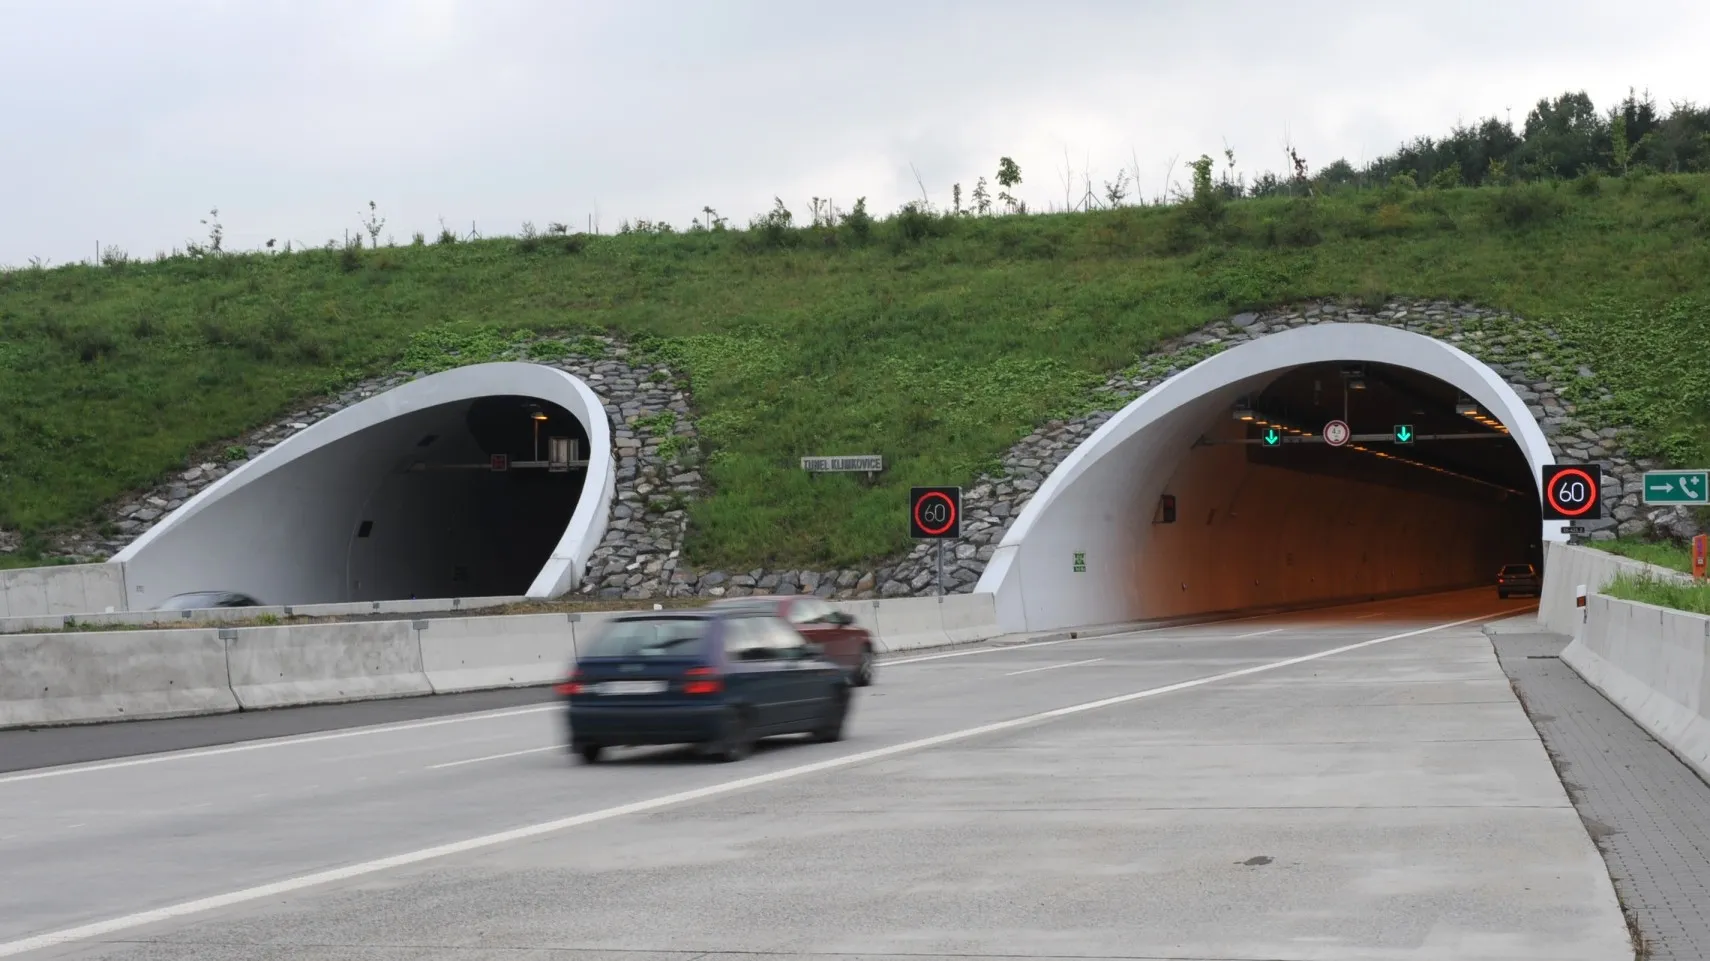 Radar v klimkovickém tunelu